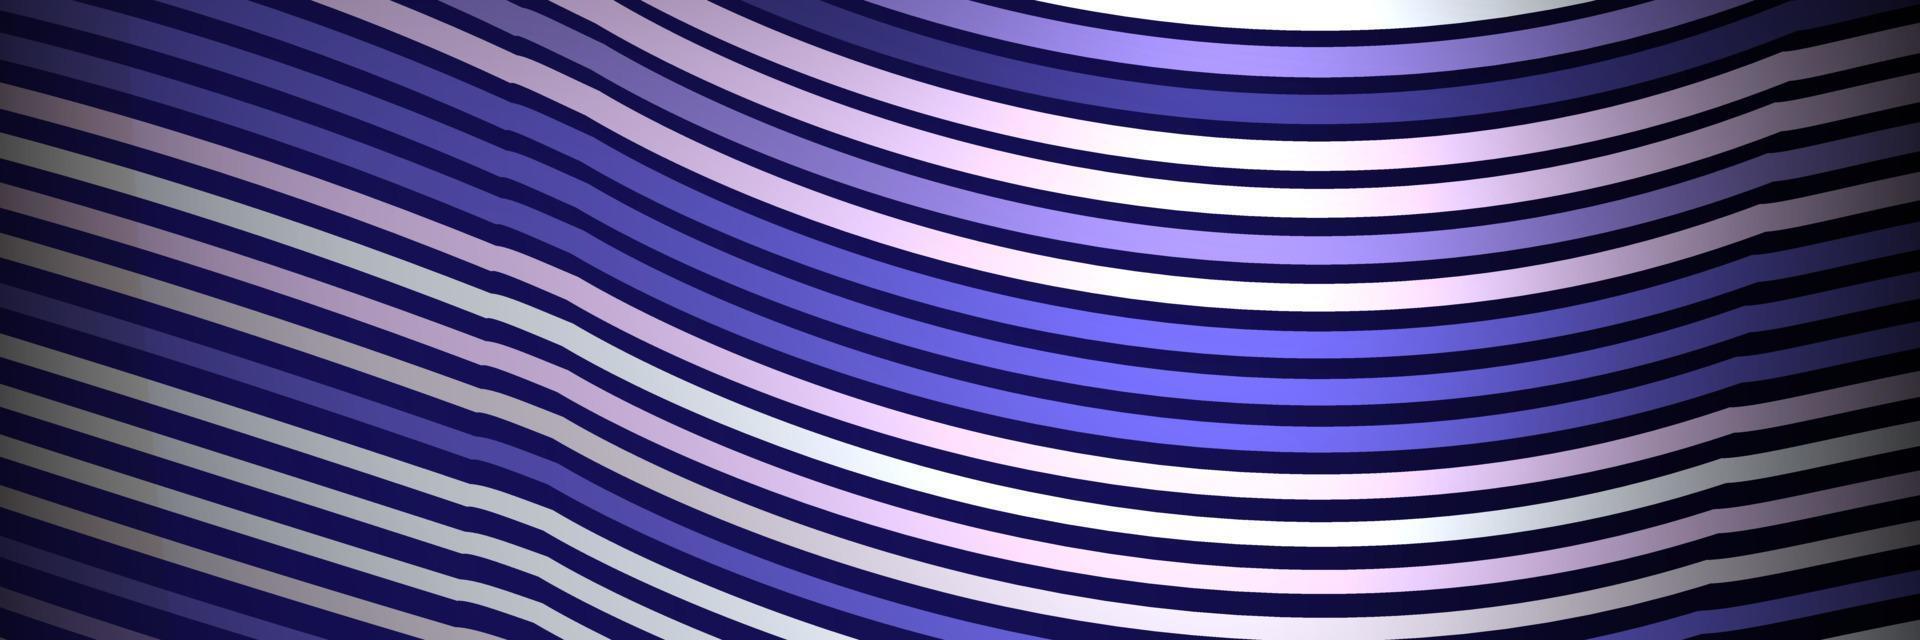 banner golf lijnen patroon een abstracte streep achtergrond, vector